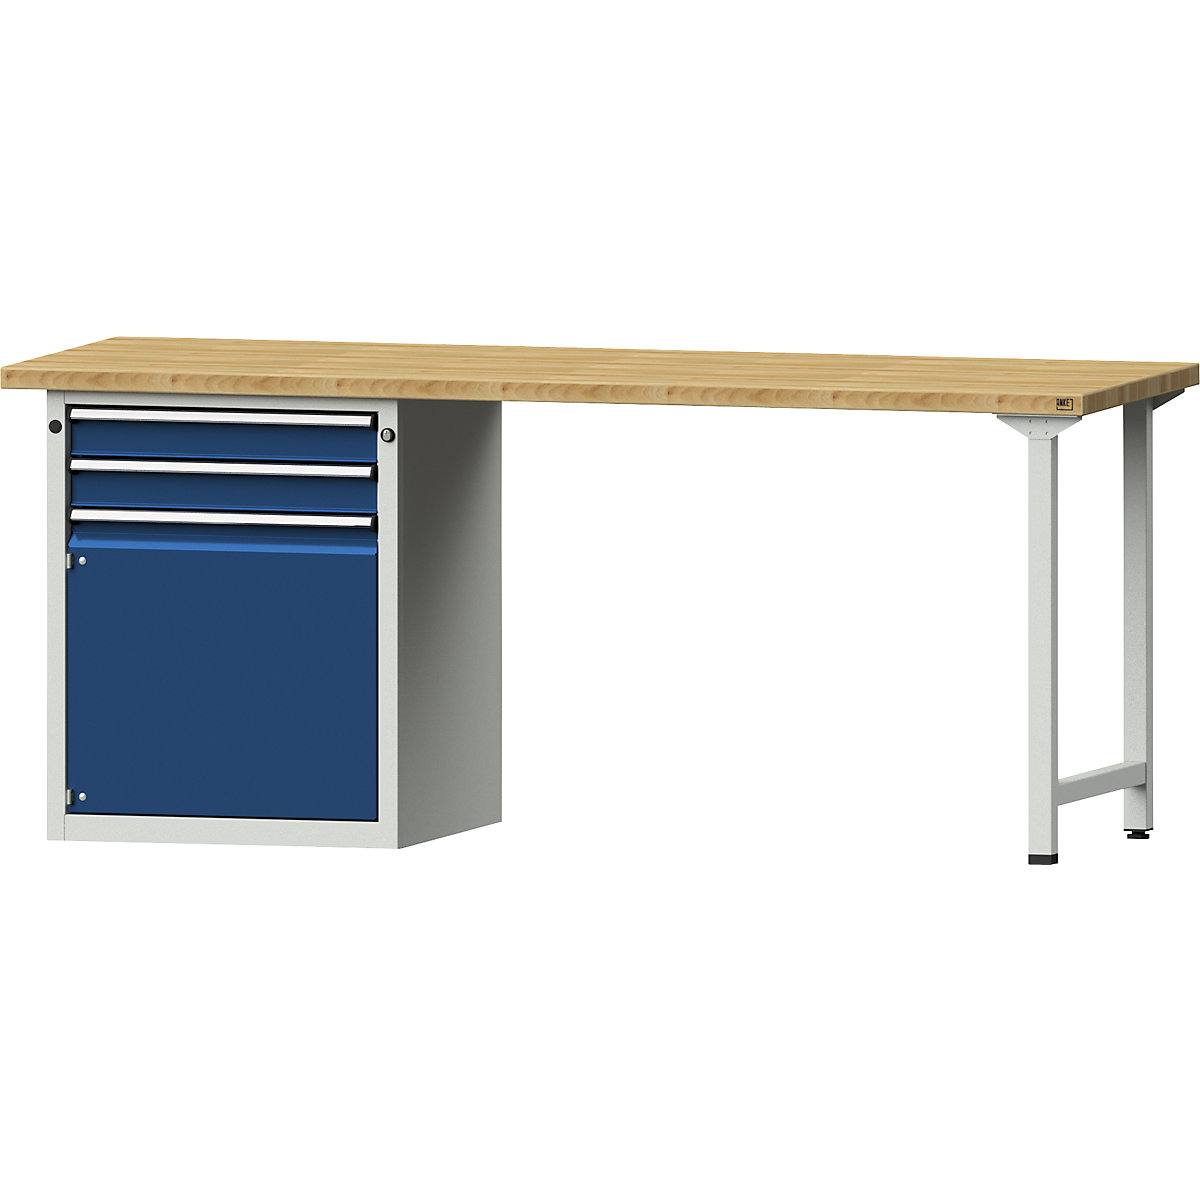 Dílenský stůl s rámovou konstrukcí – ANKE, 2 zásuvky, 1 dveře, deska z bukového masivu, šířka 2000 mm